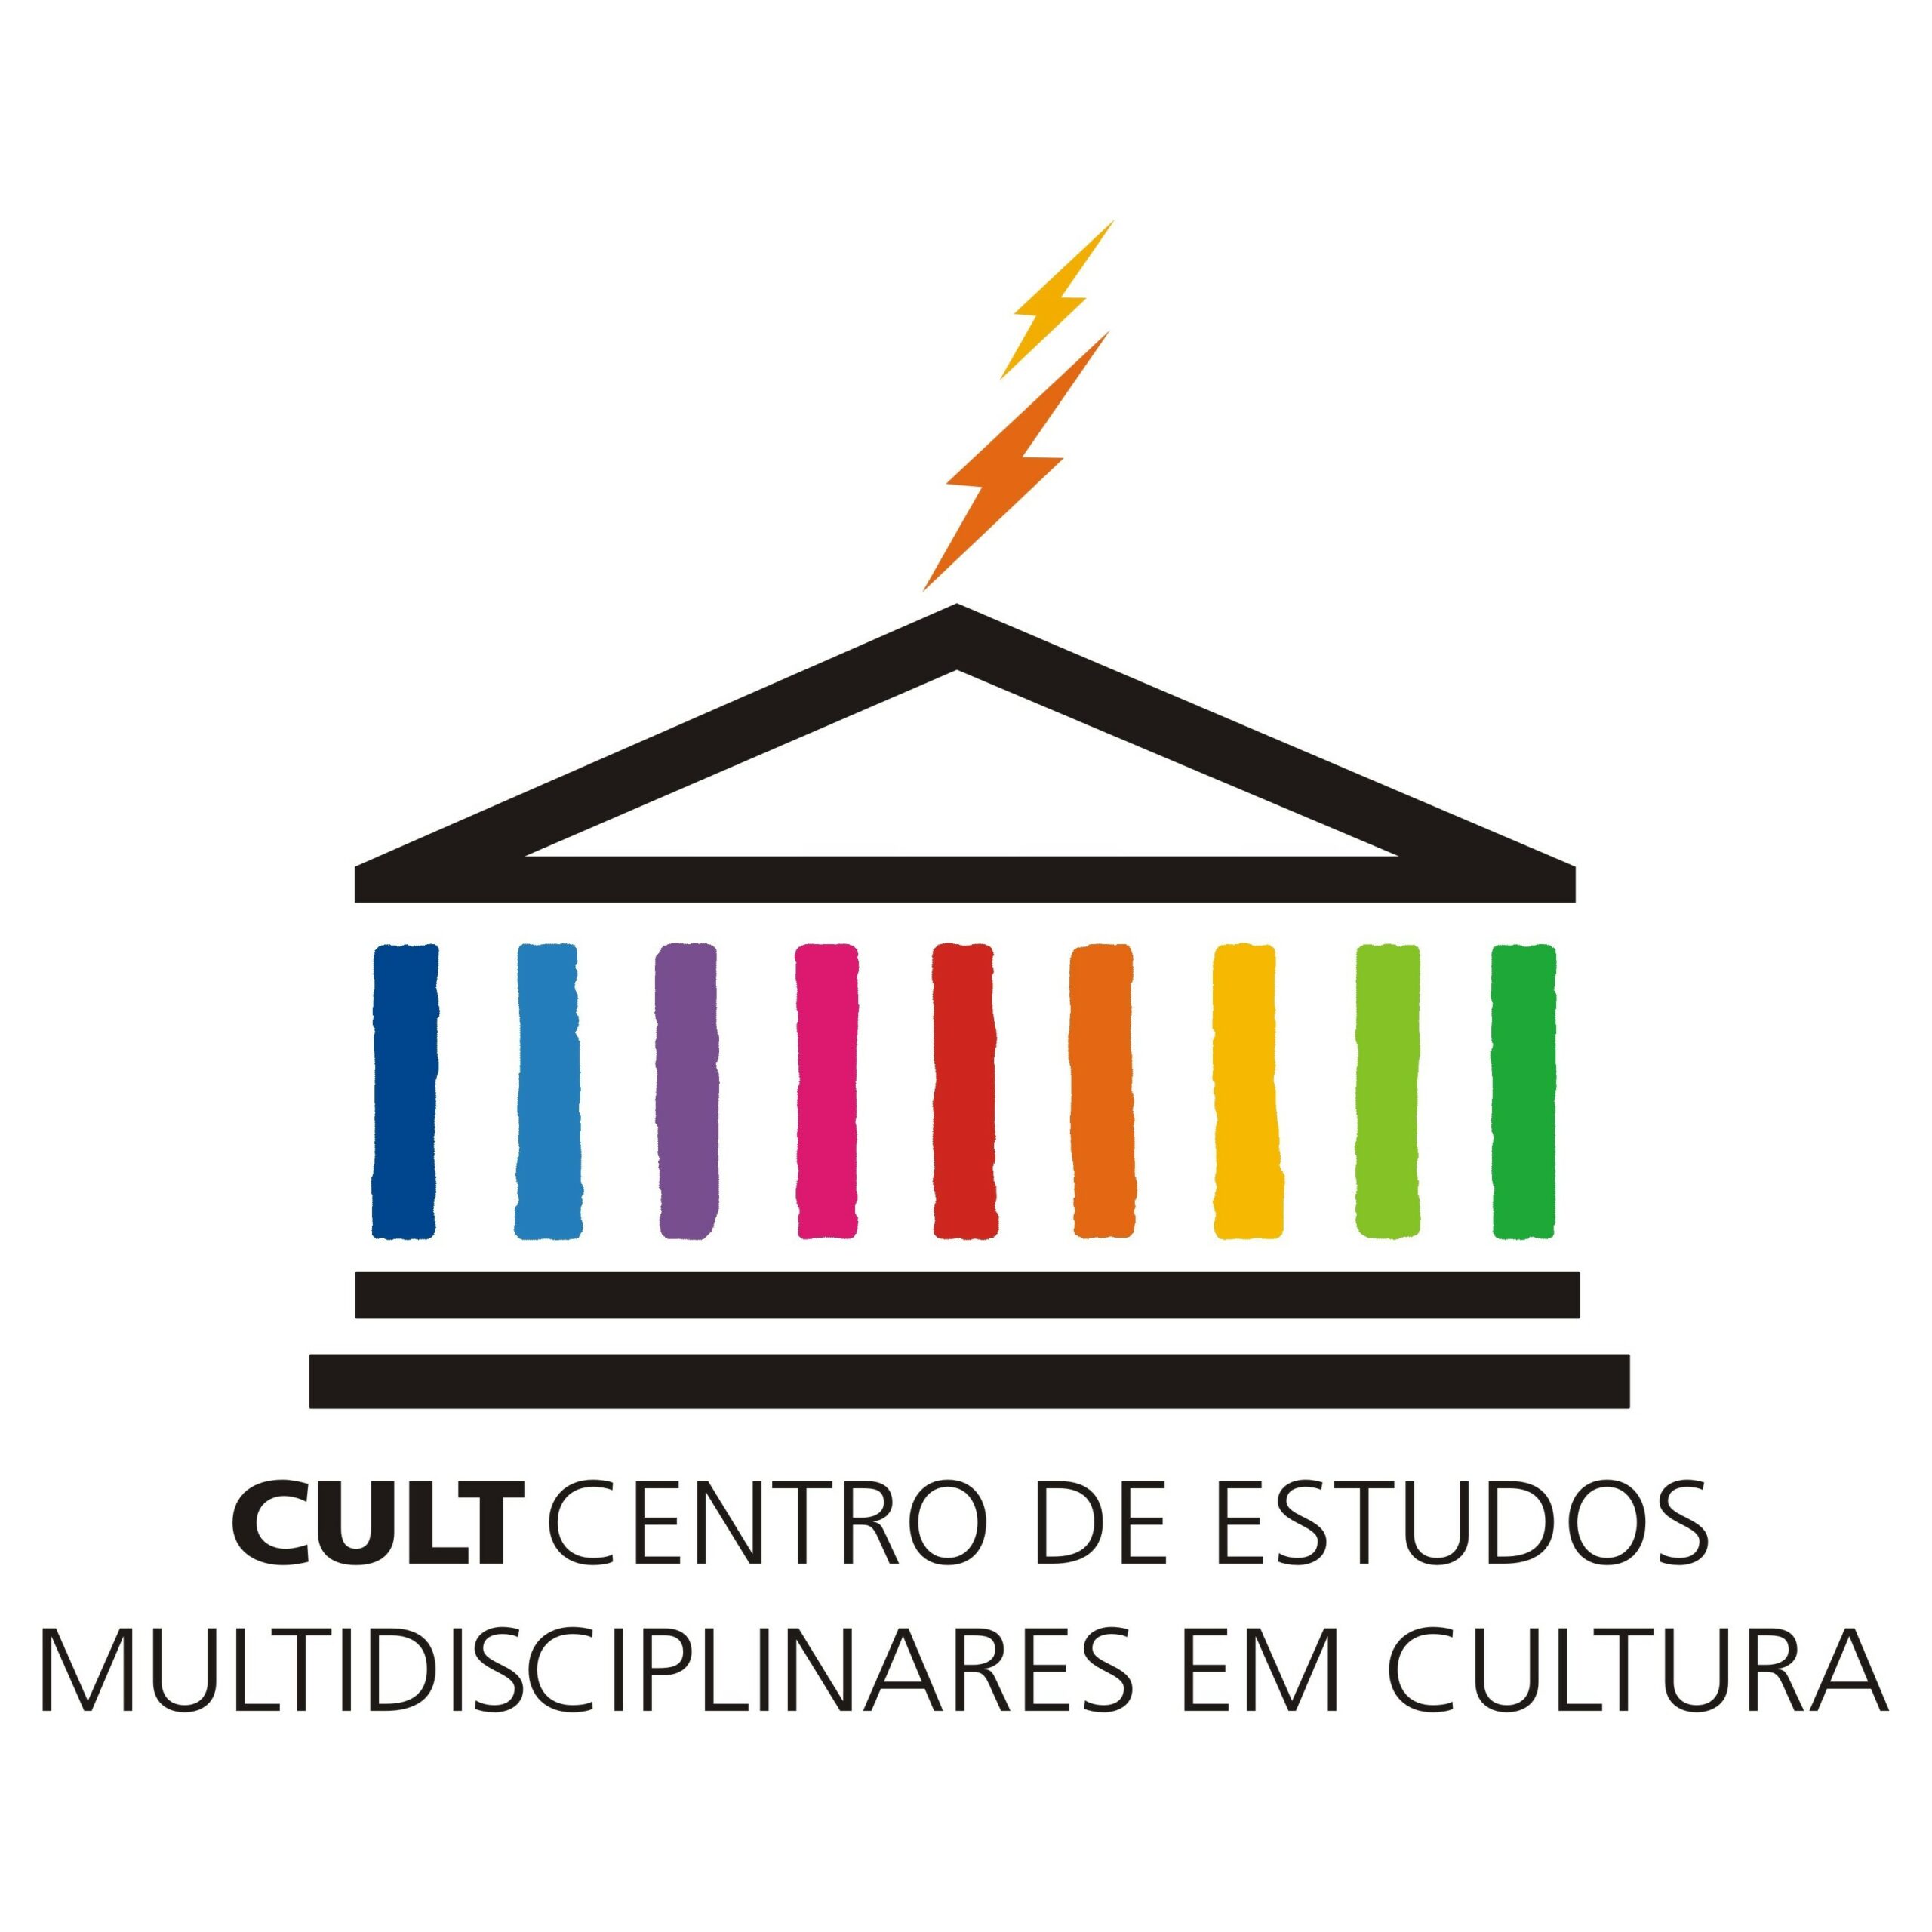 CULT divulga classificação final da seleção de bolsista para projeto “Pesquisa-Ação: Agentes Culturais Democráticos”